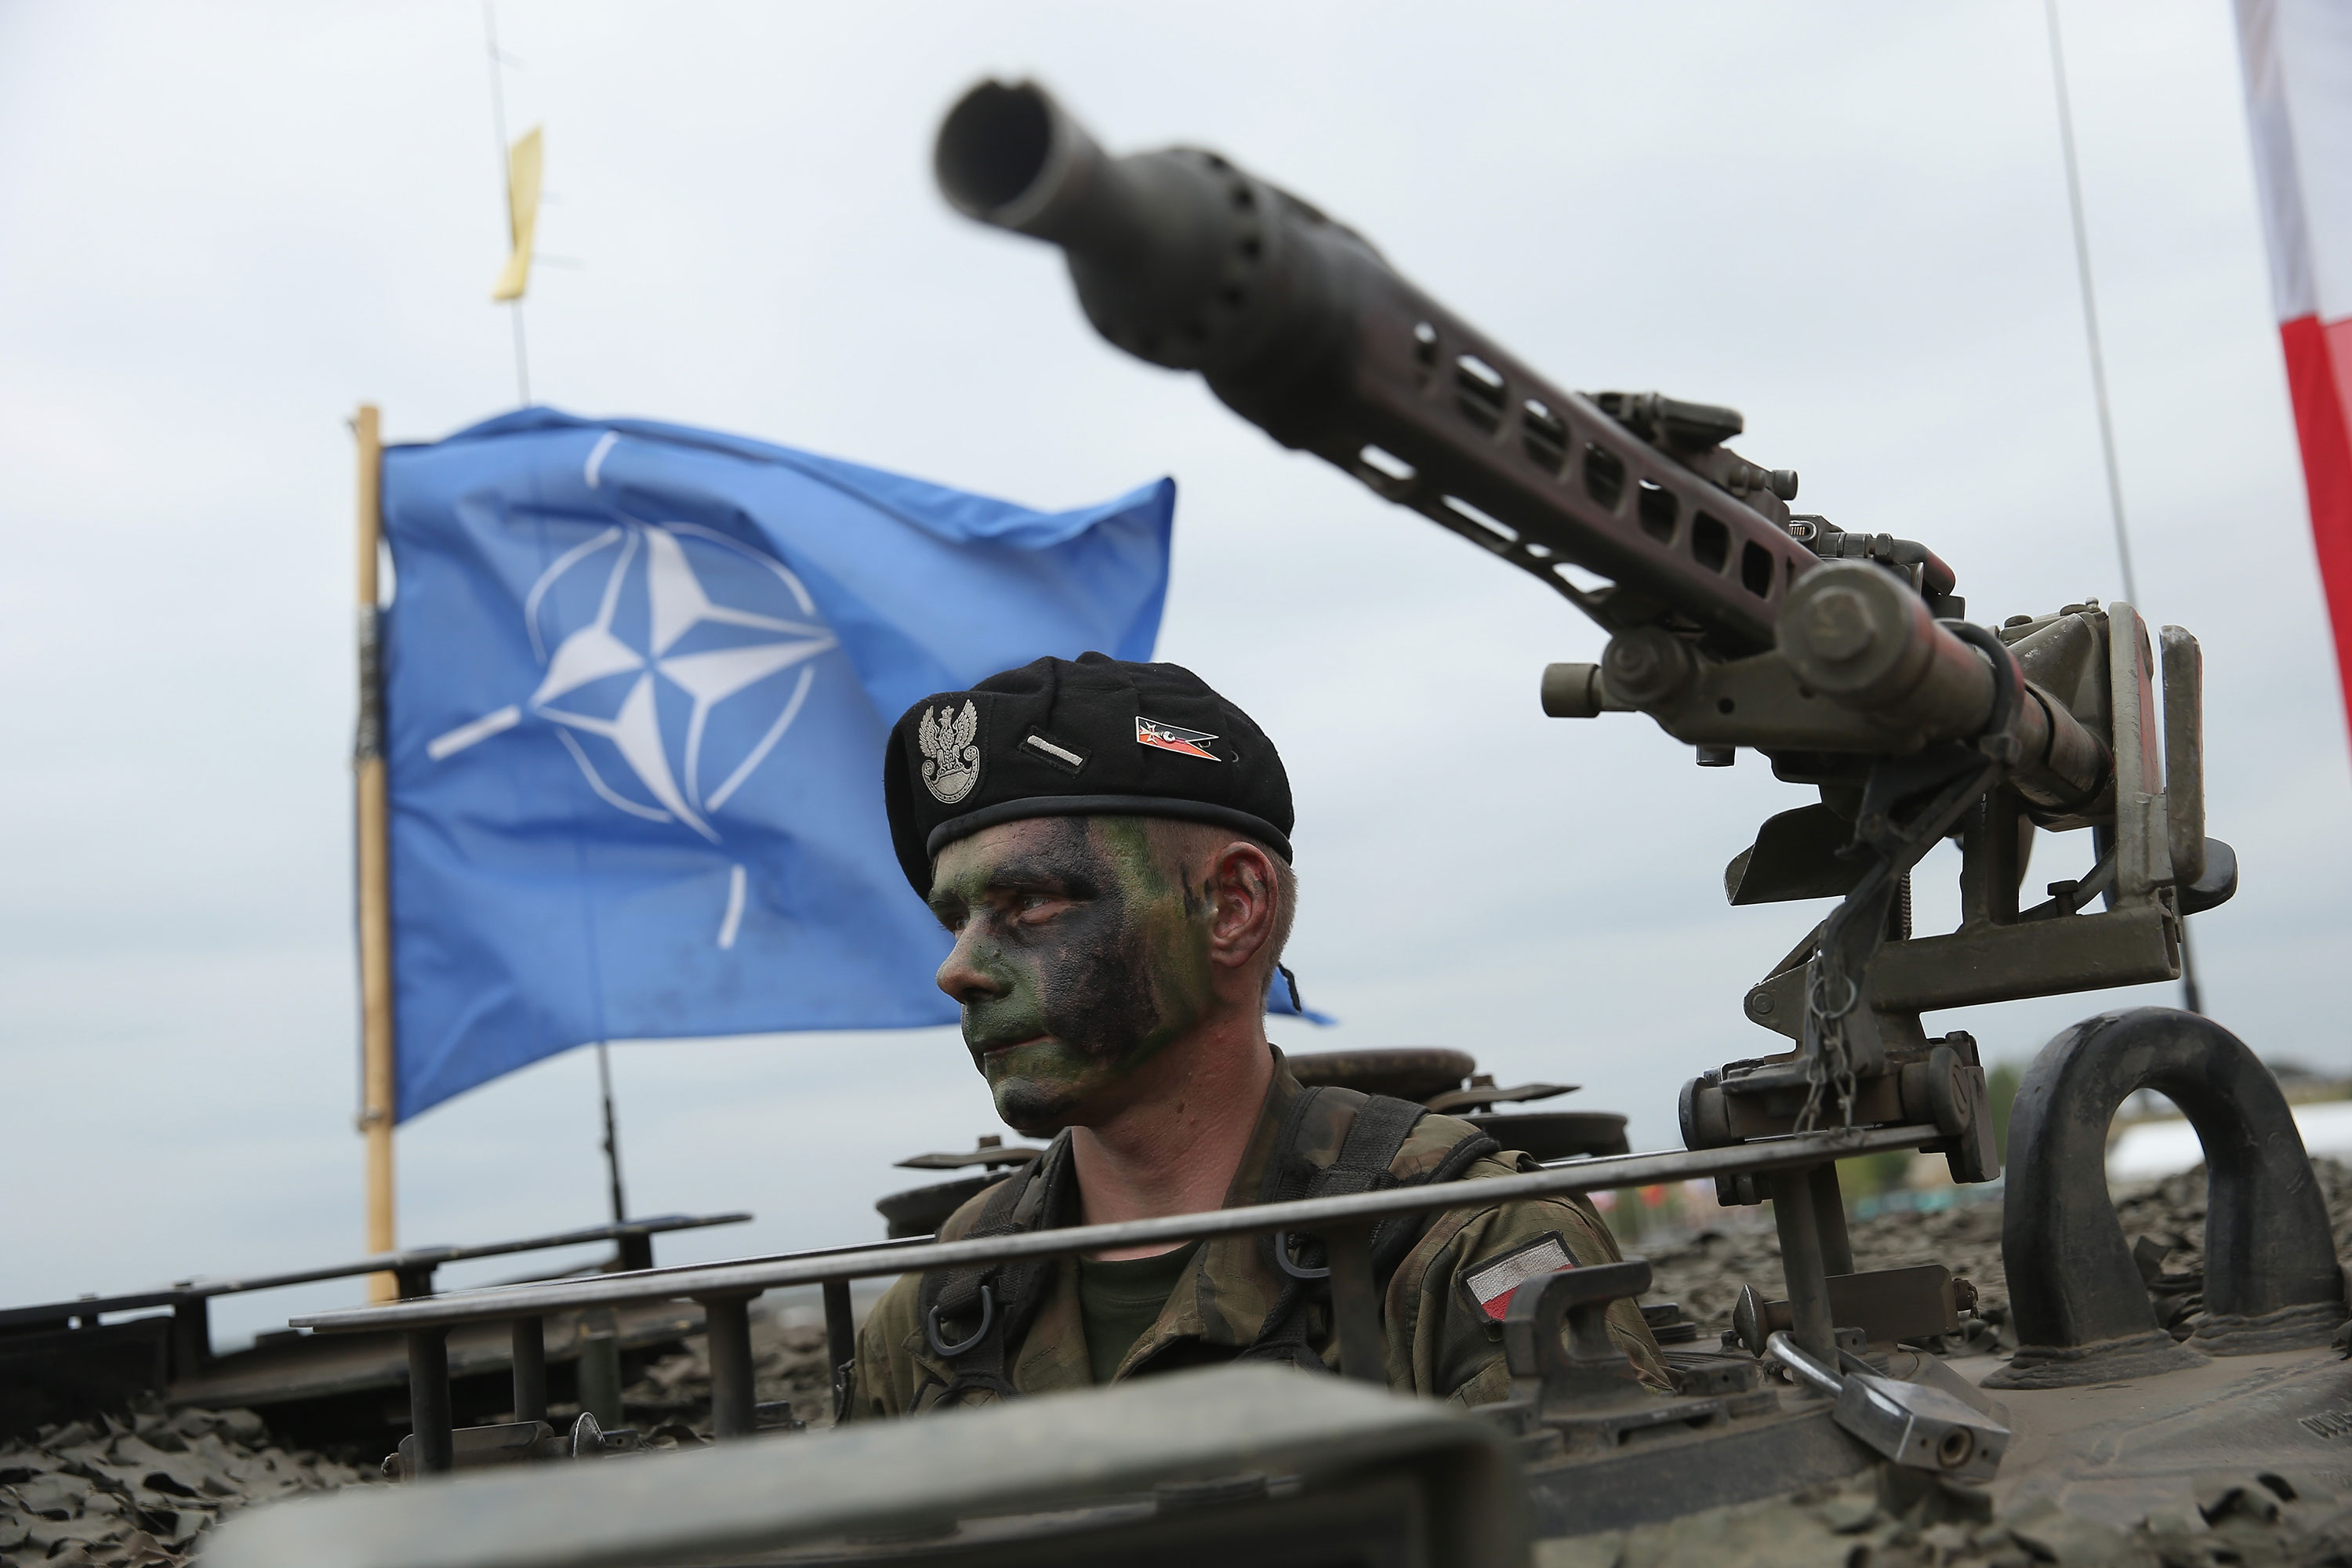 جندي مع الجيش البولندي يجلس في دبابة بينما يرفرف علم الناتو خلفه خلال مناورات عسكرية في عام 2015 في زاغان ، بولندا.